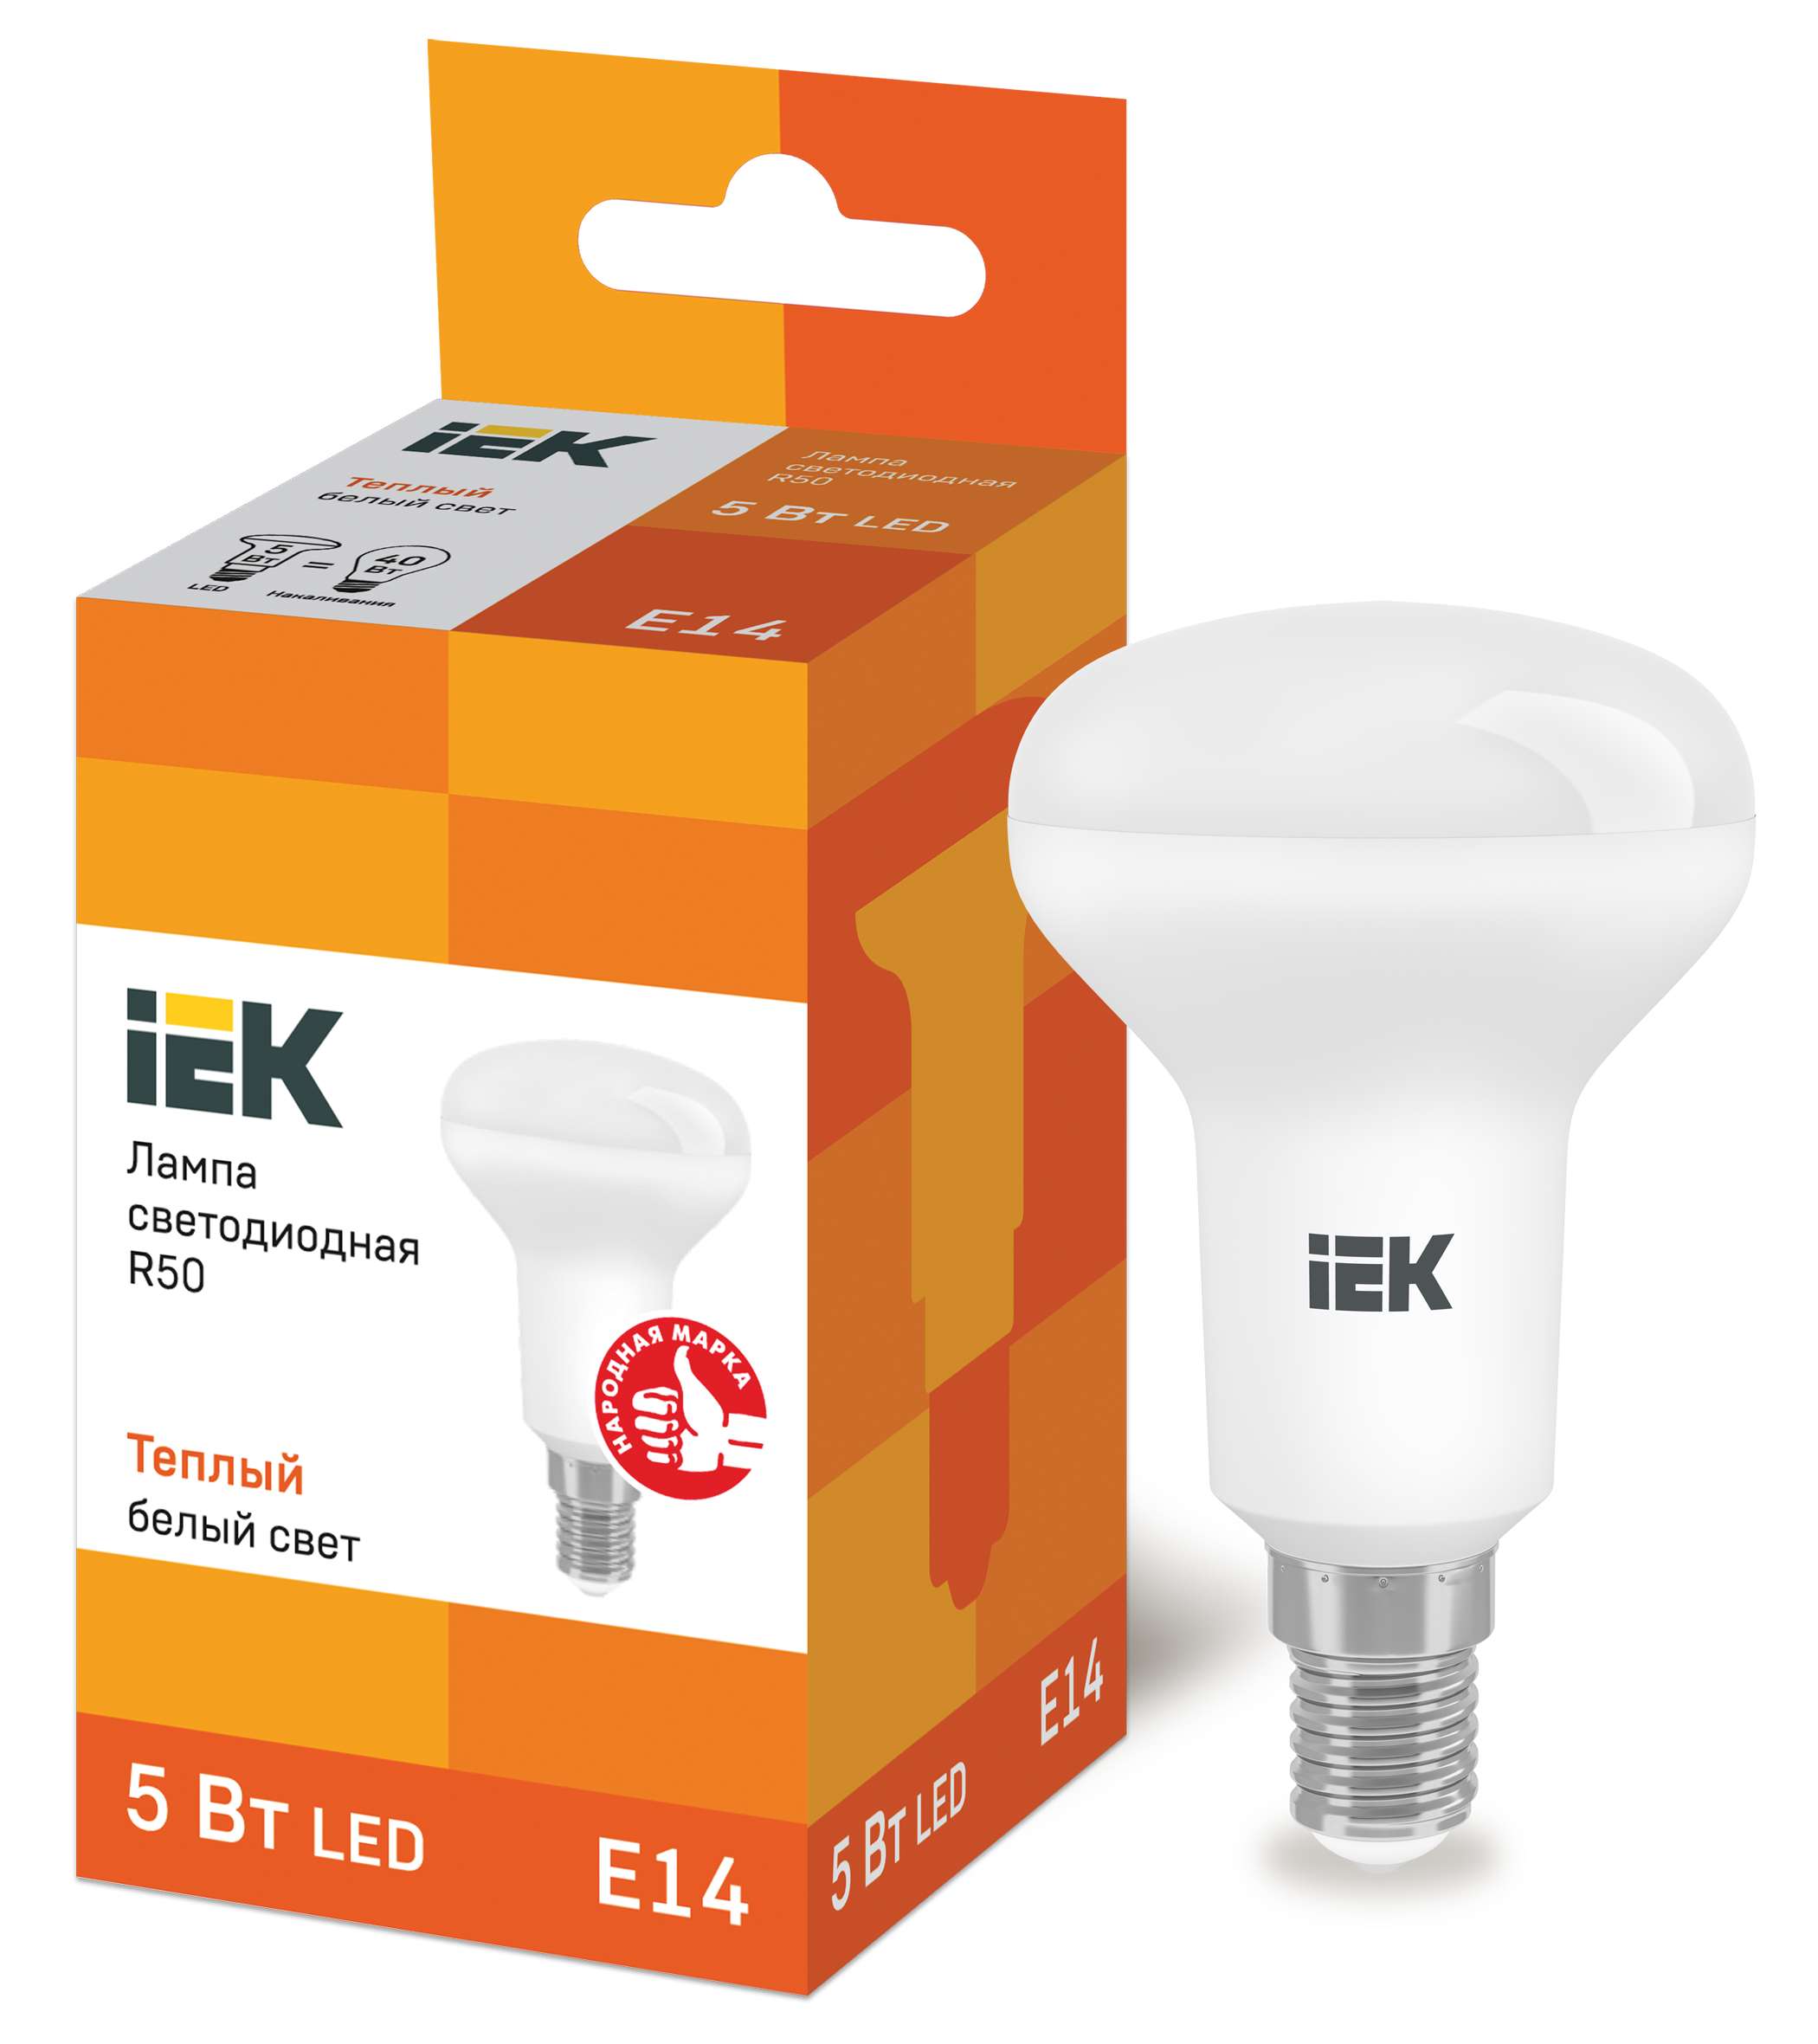 IEK Лампа светодиодная ECO R50 рефлектор 5Вт 230В 3000К E14